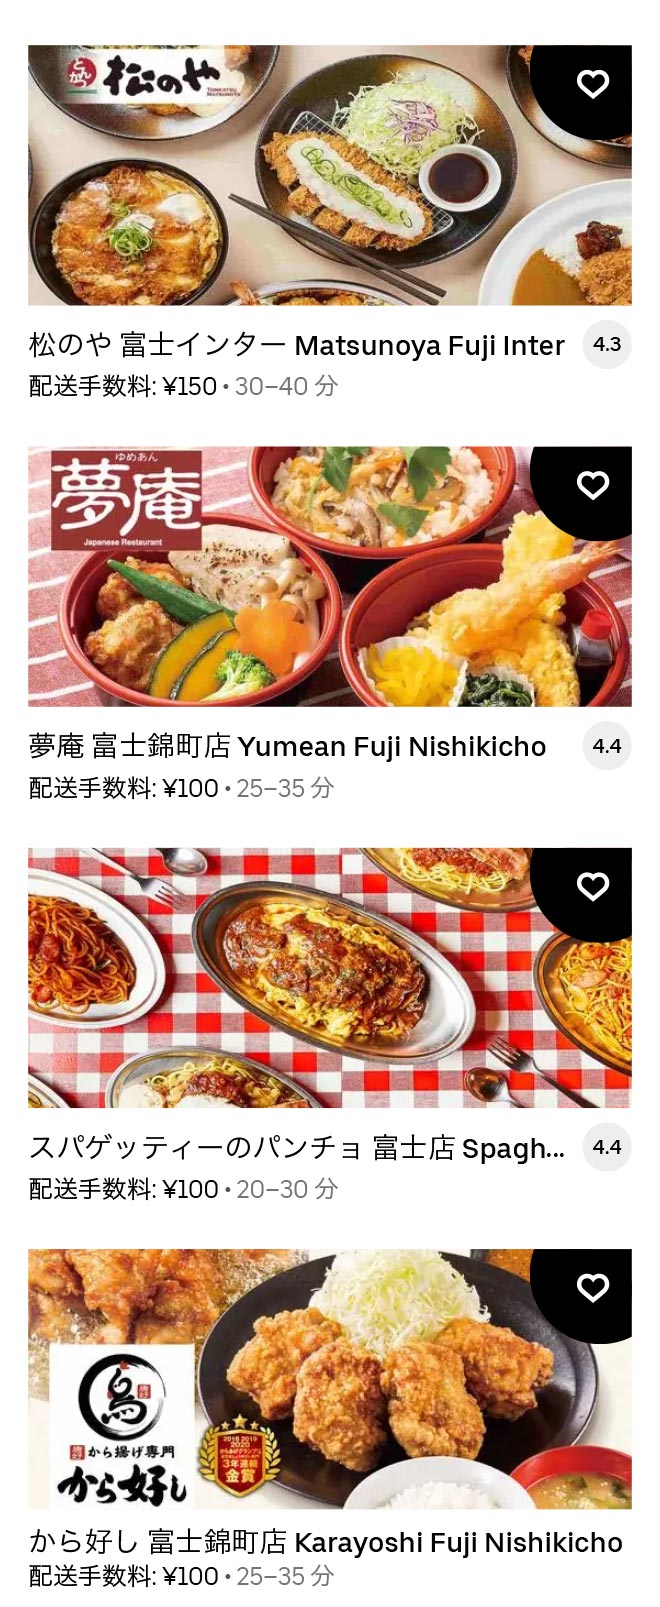 U yoshiwara menu 2104 06